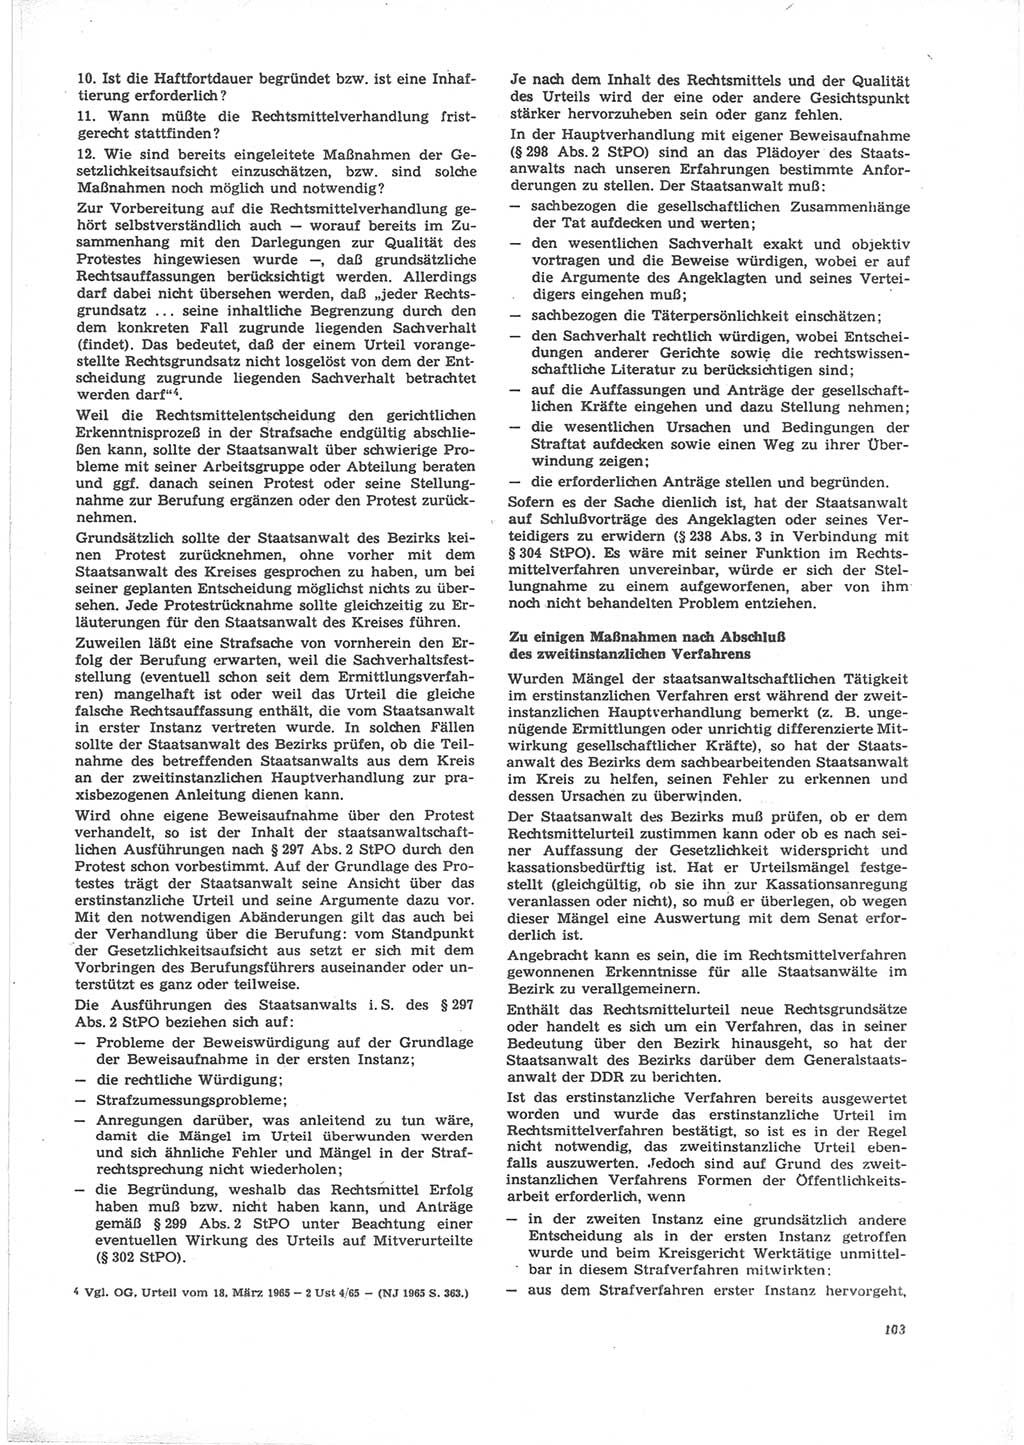 Neue Justiz (NJ), Zeitschrift für Recht und Rechtswissenschaft [Deutsche Demokratische Republik (DDR)], 24. Jahrgang 1970, Seite 103 (NJ DDR 1970, S. 103)